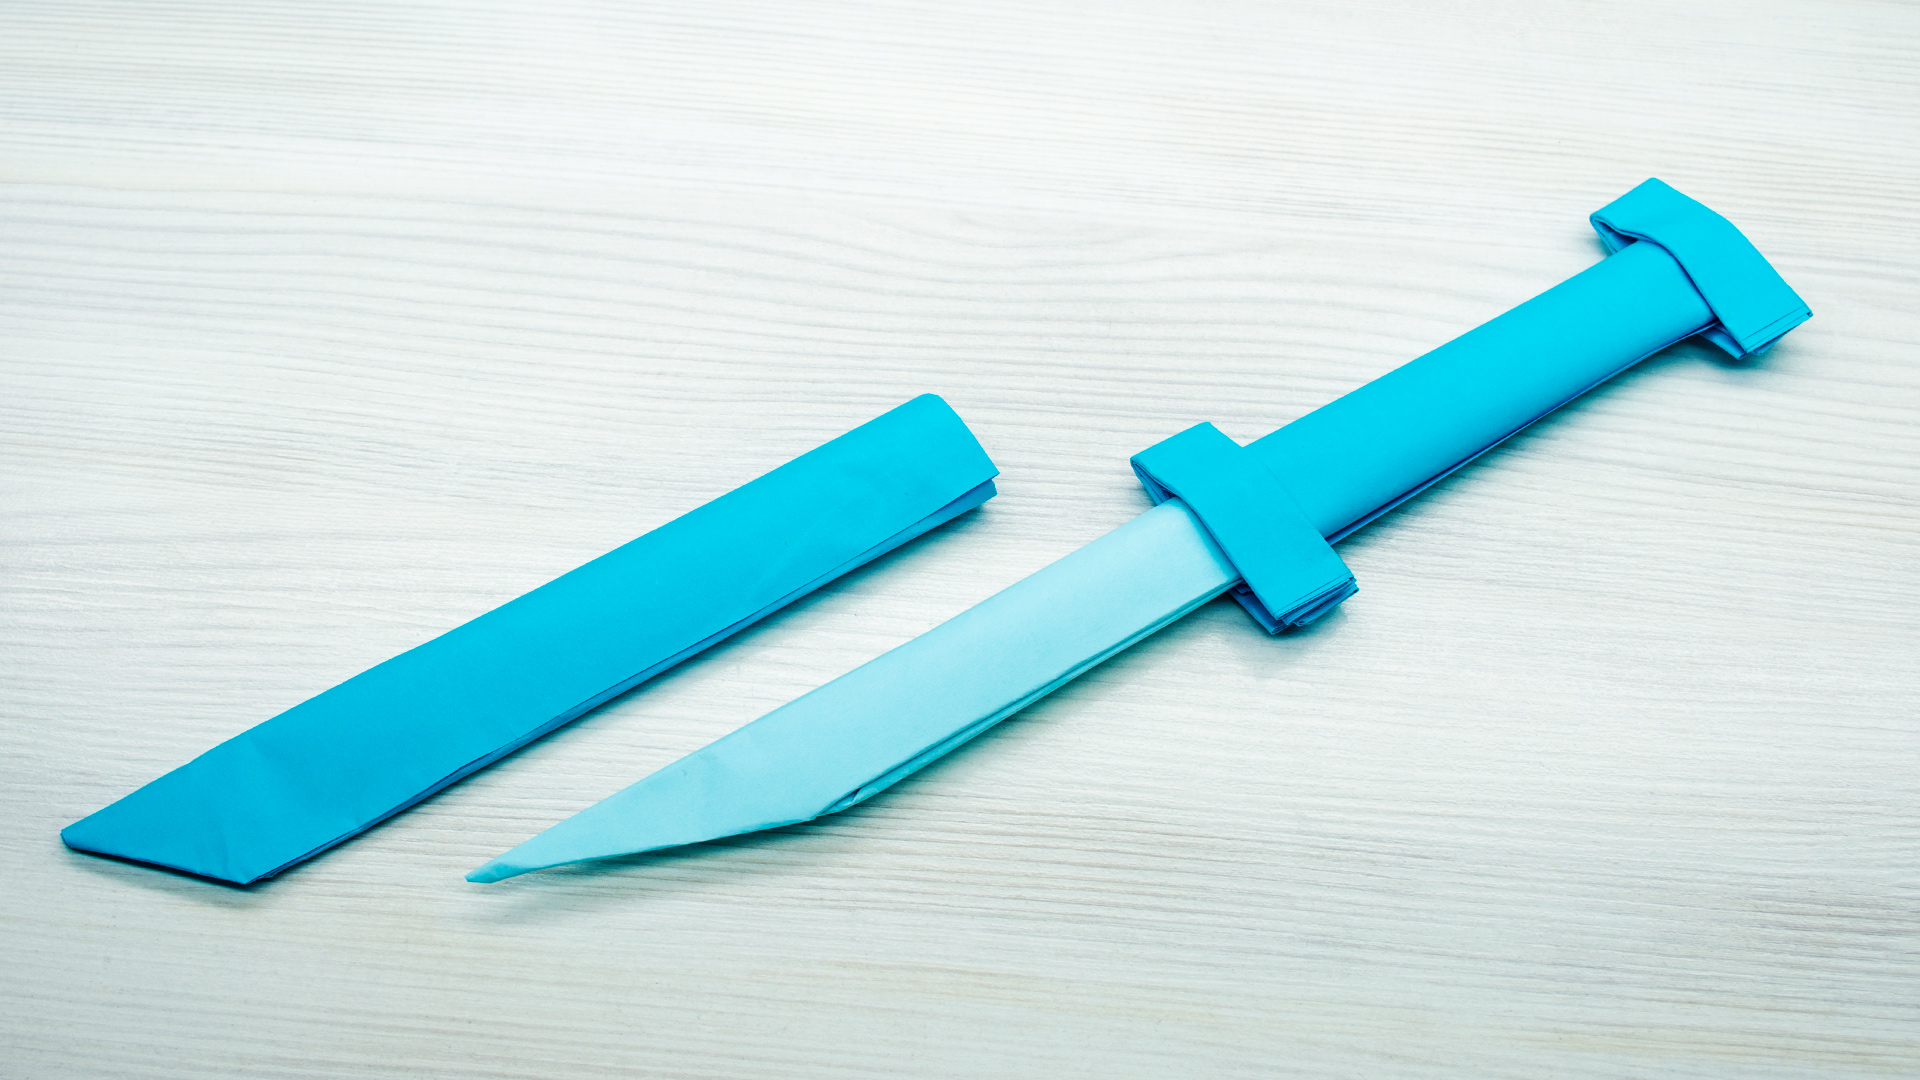 Как сделать раскладной складной нож из бумаги А4 своими руками?